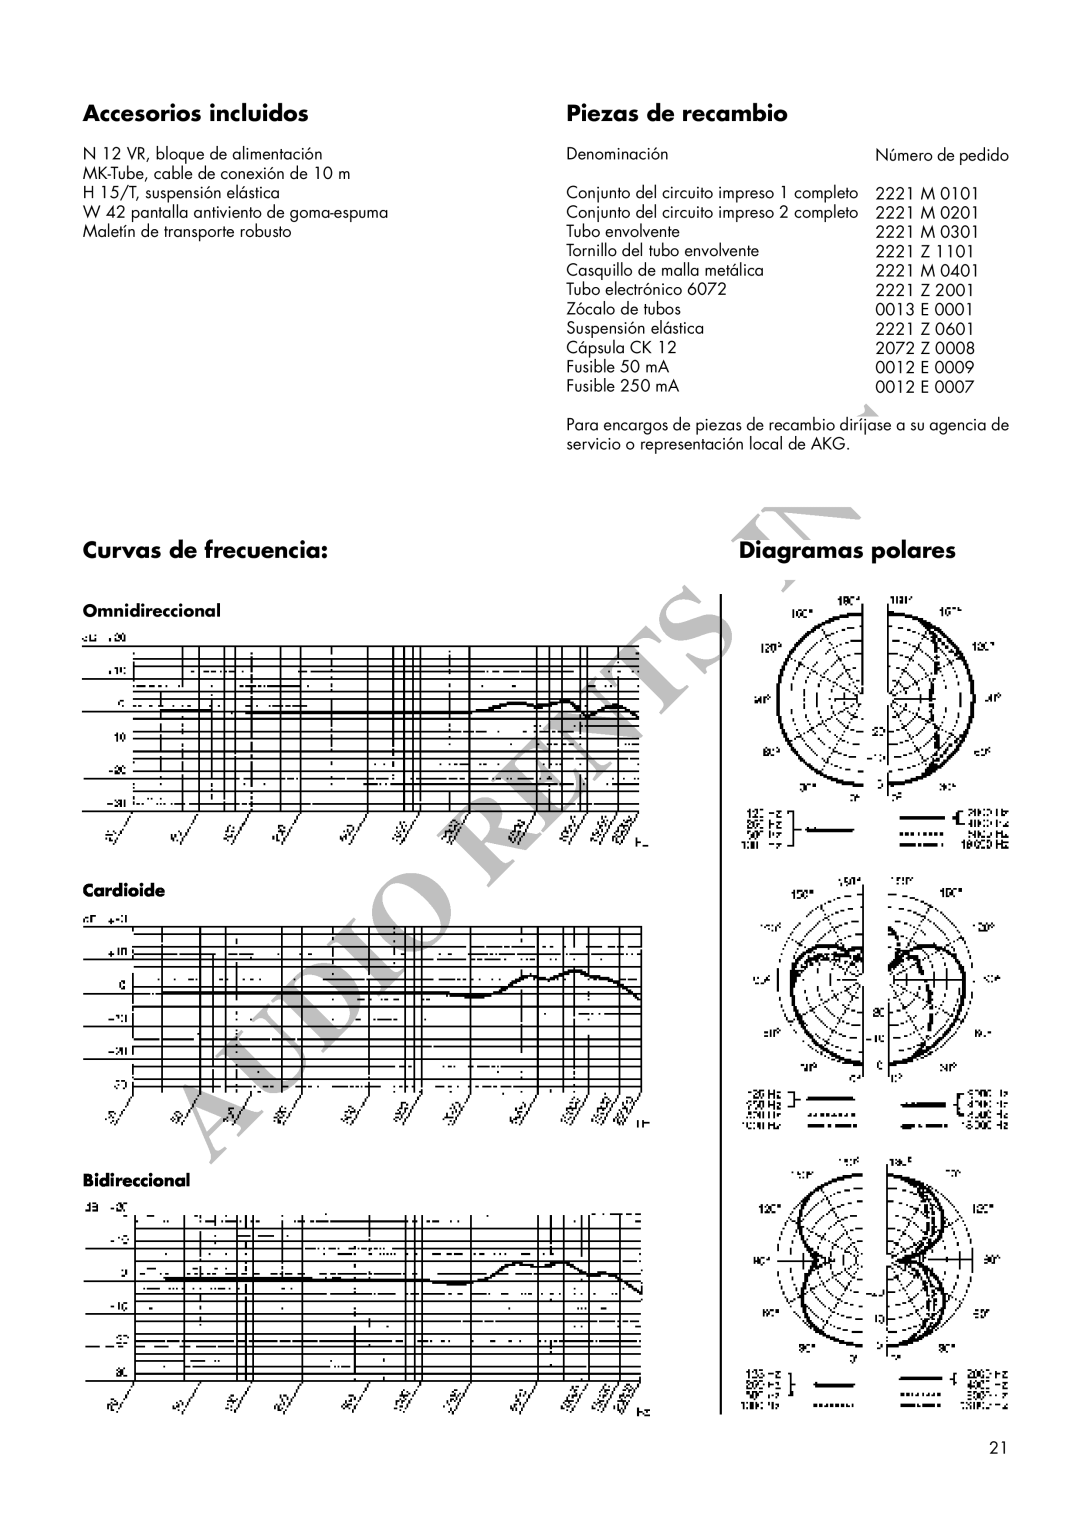 AKG Acoustics C 12VR manual Accesorios incluidos, Piezas de recambio, Curvas de frecuencia, Diagramas polares 